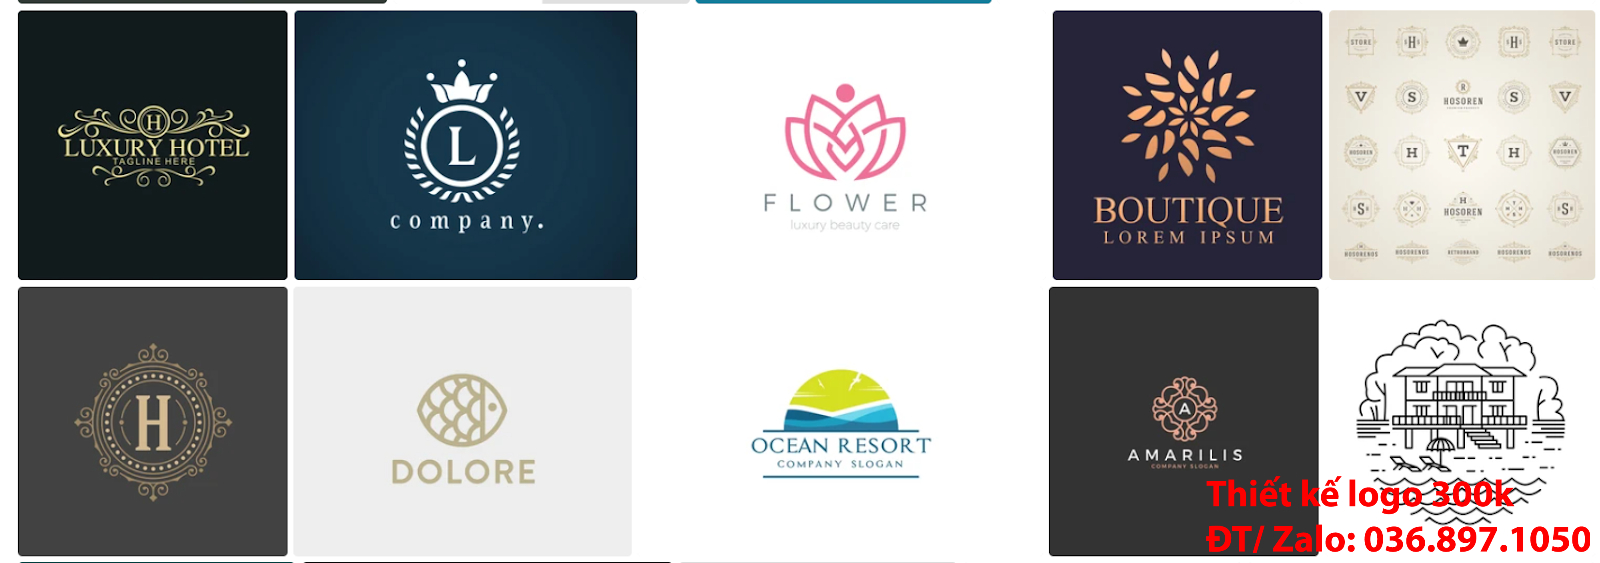 Dịch vụ nhận thiết kế Mẫu logo đẹp khách sạn resort nhà nghỉ sáng tạo giá rẻ chuyên nghiệp 500k